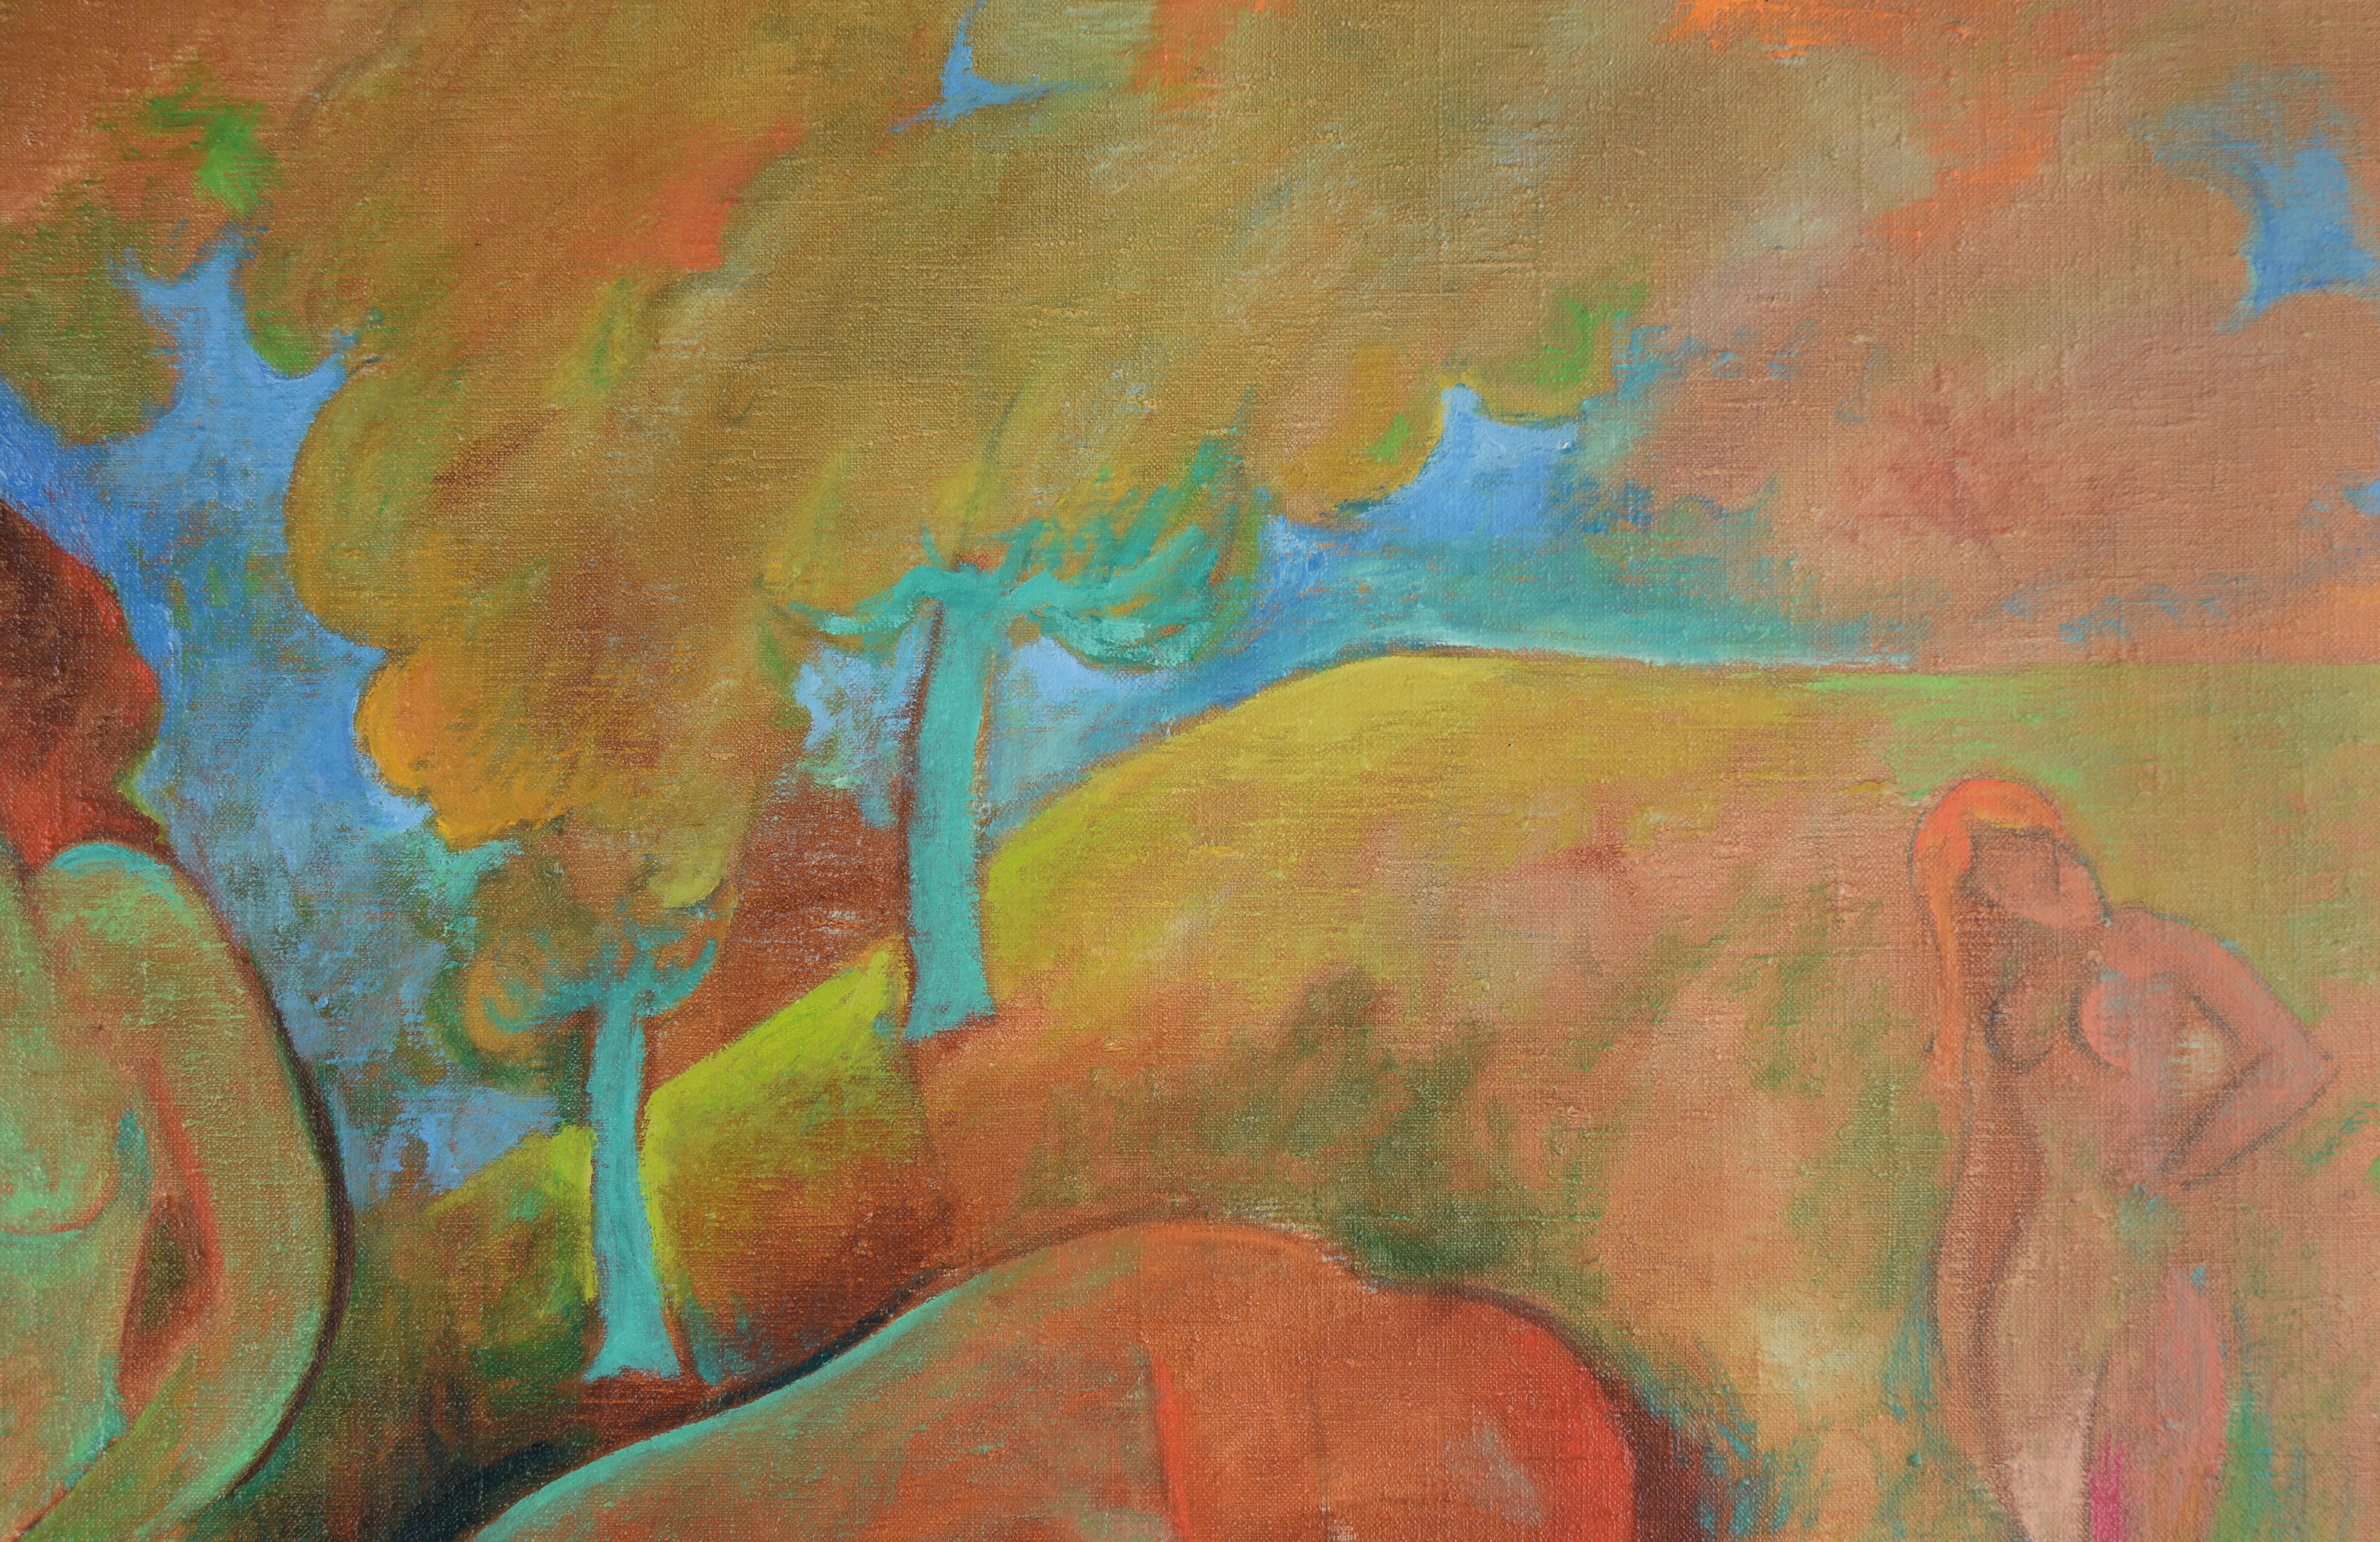 Représentation vibrante d'un groupe de baigneurs dans une forêt luxuriante et colorée d'invention fauve par l'artiste californien Don Klopfer (1920-2009). Les figures nues stylisées, représentées dans une palette de couleurs vives et éclatantes,